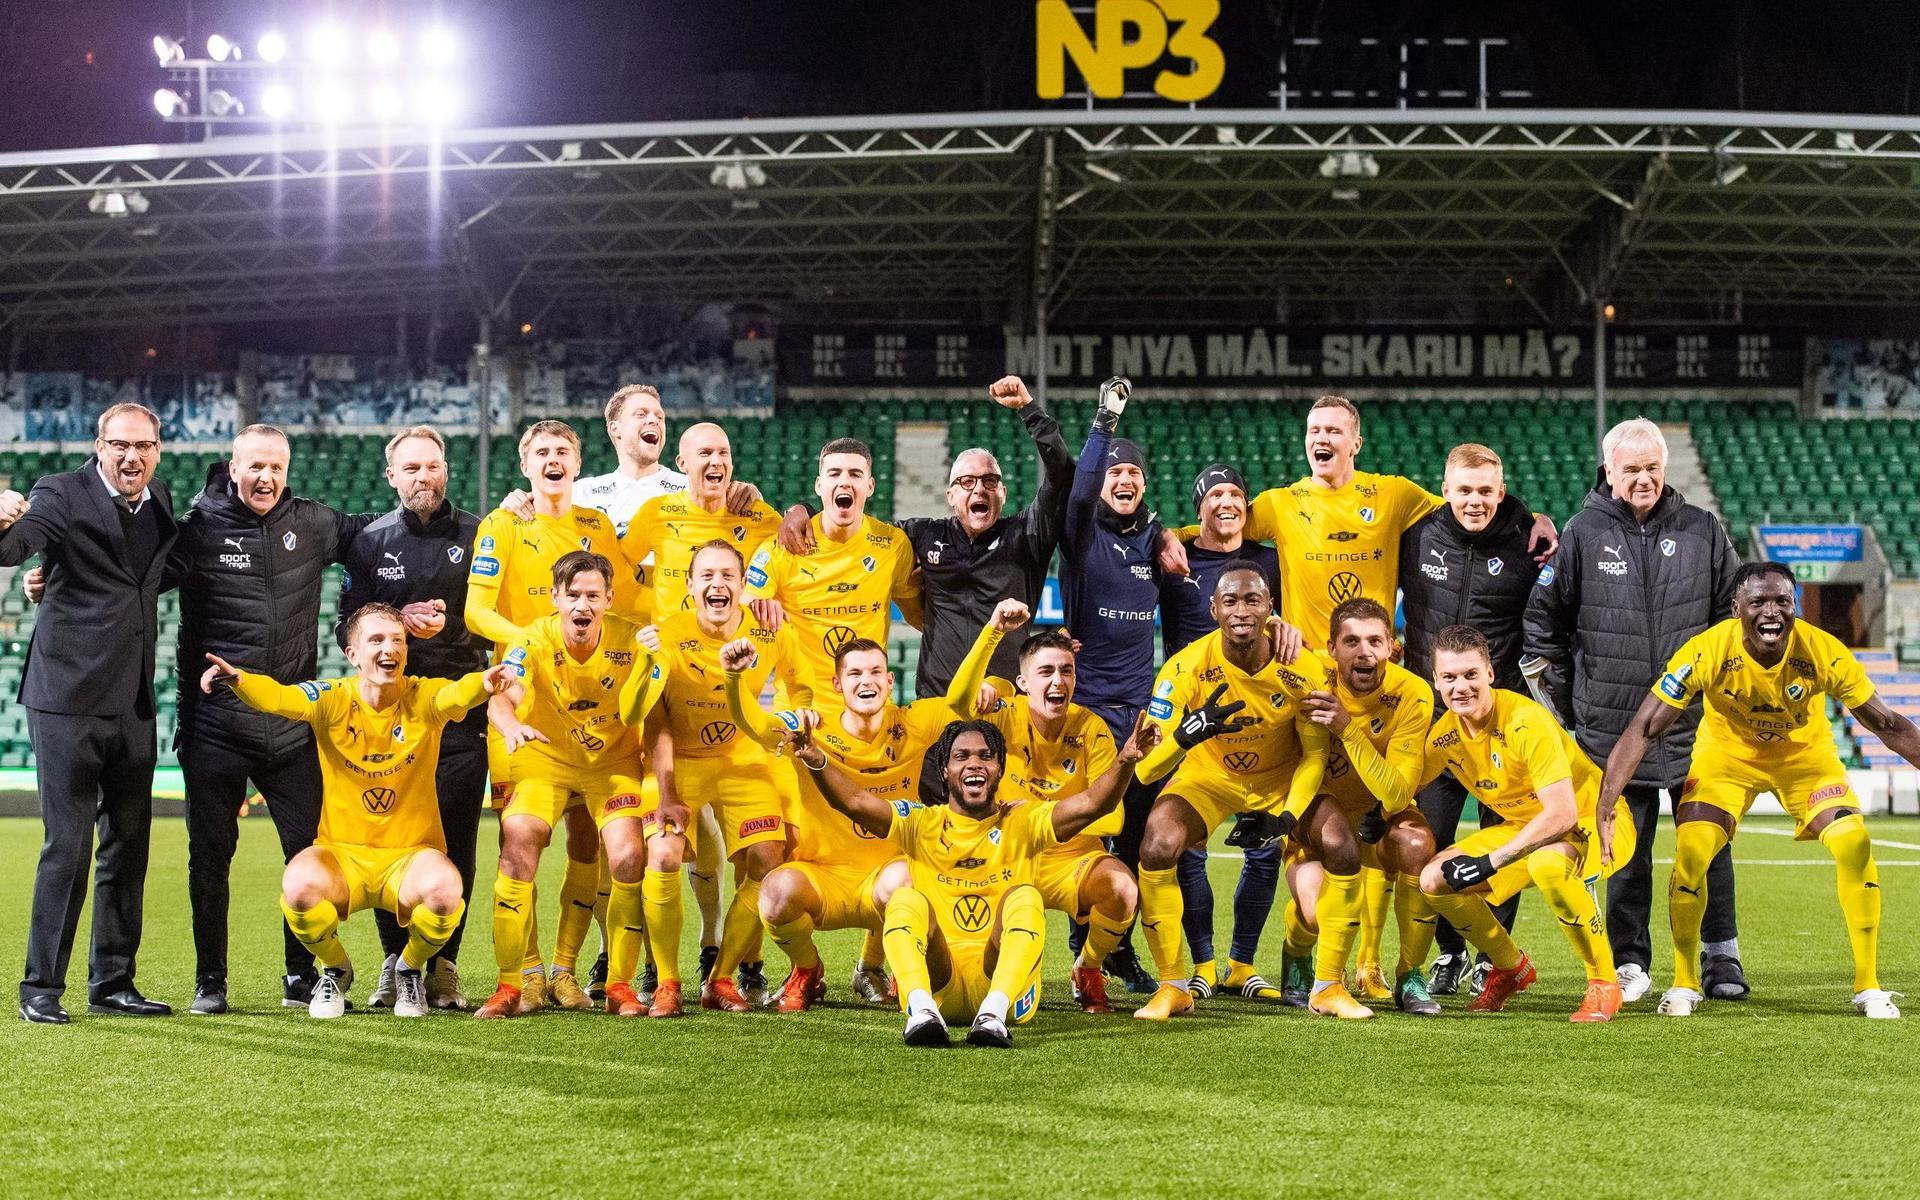 201121 Halmstads spelare jublar och poserar för en bild efter seger som innebär avancemang till Allsvenskan under fotbollsmatchen i Superettan mellan GIF Sundsvall och Halmstad den 21 november 2020 i Sundsvall.Foto: Erik Mårtensson / BILDBYRÅN / COP 222 / ER0010